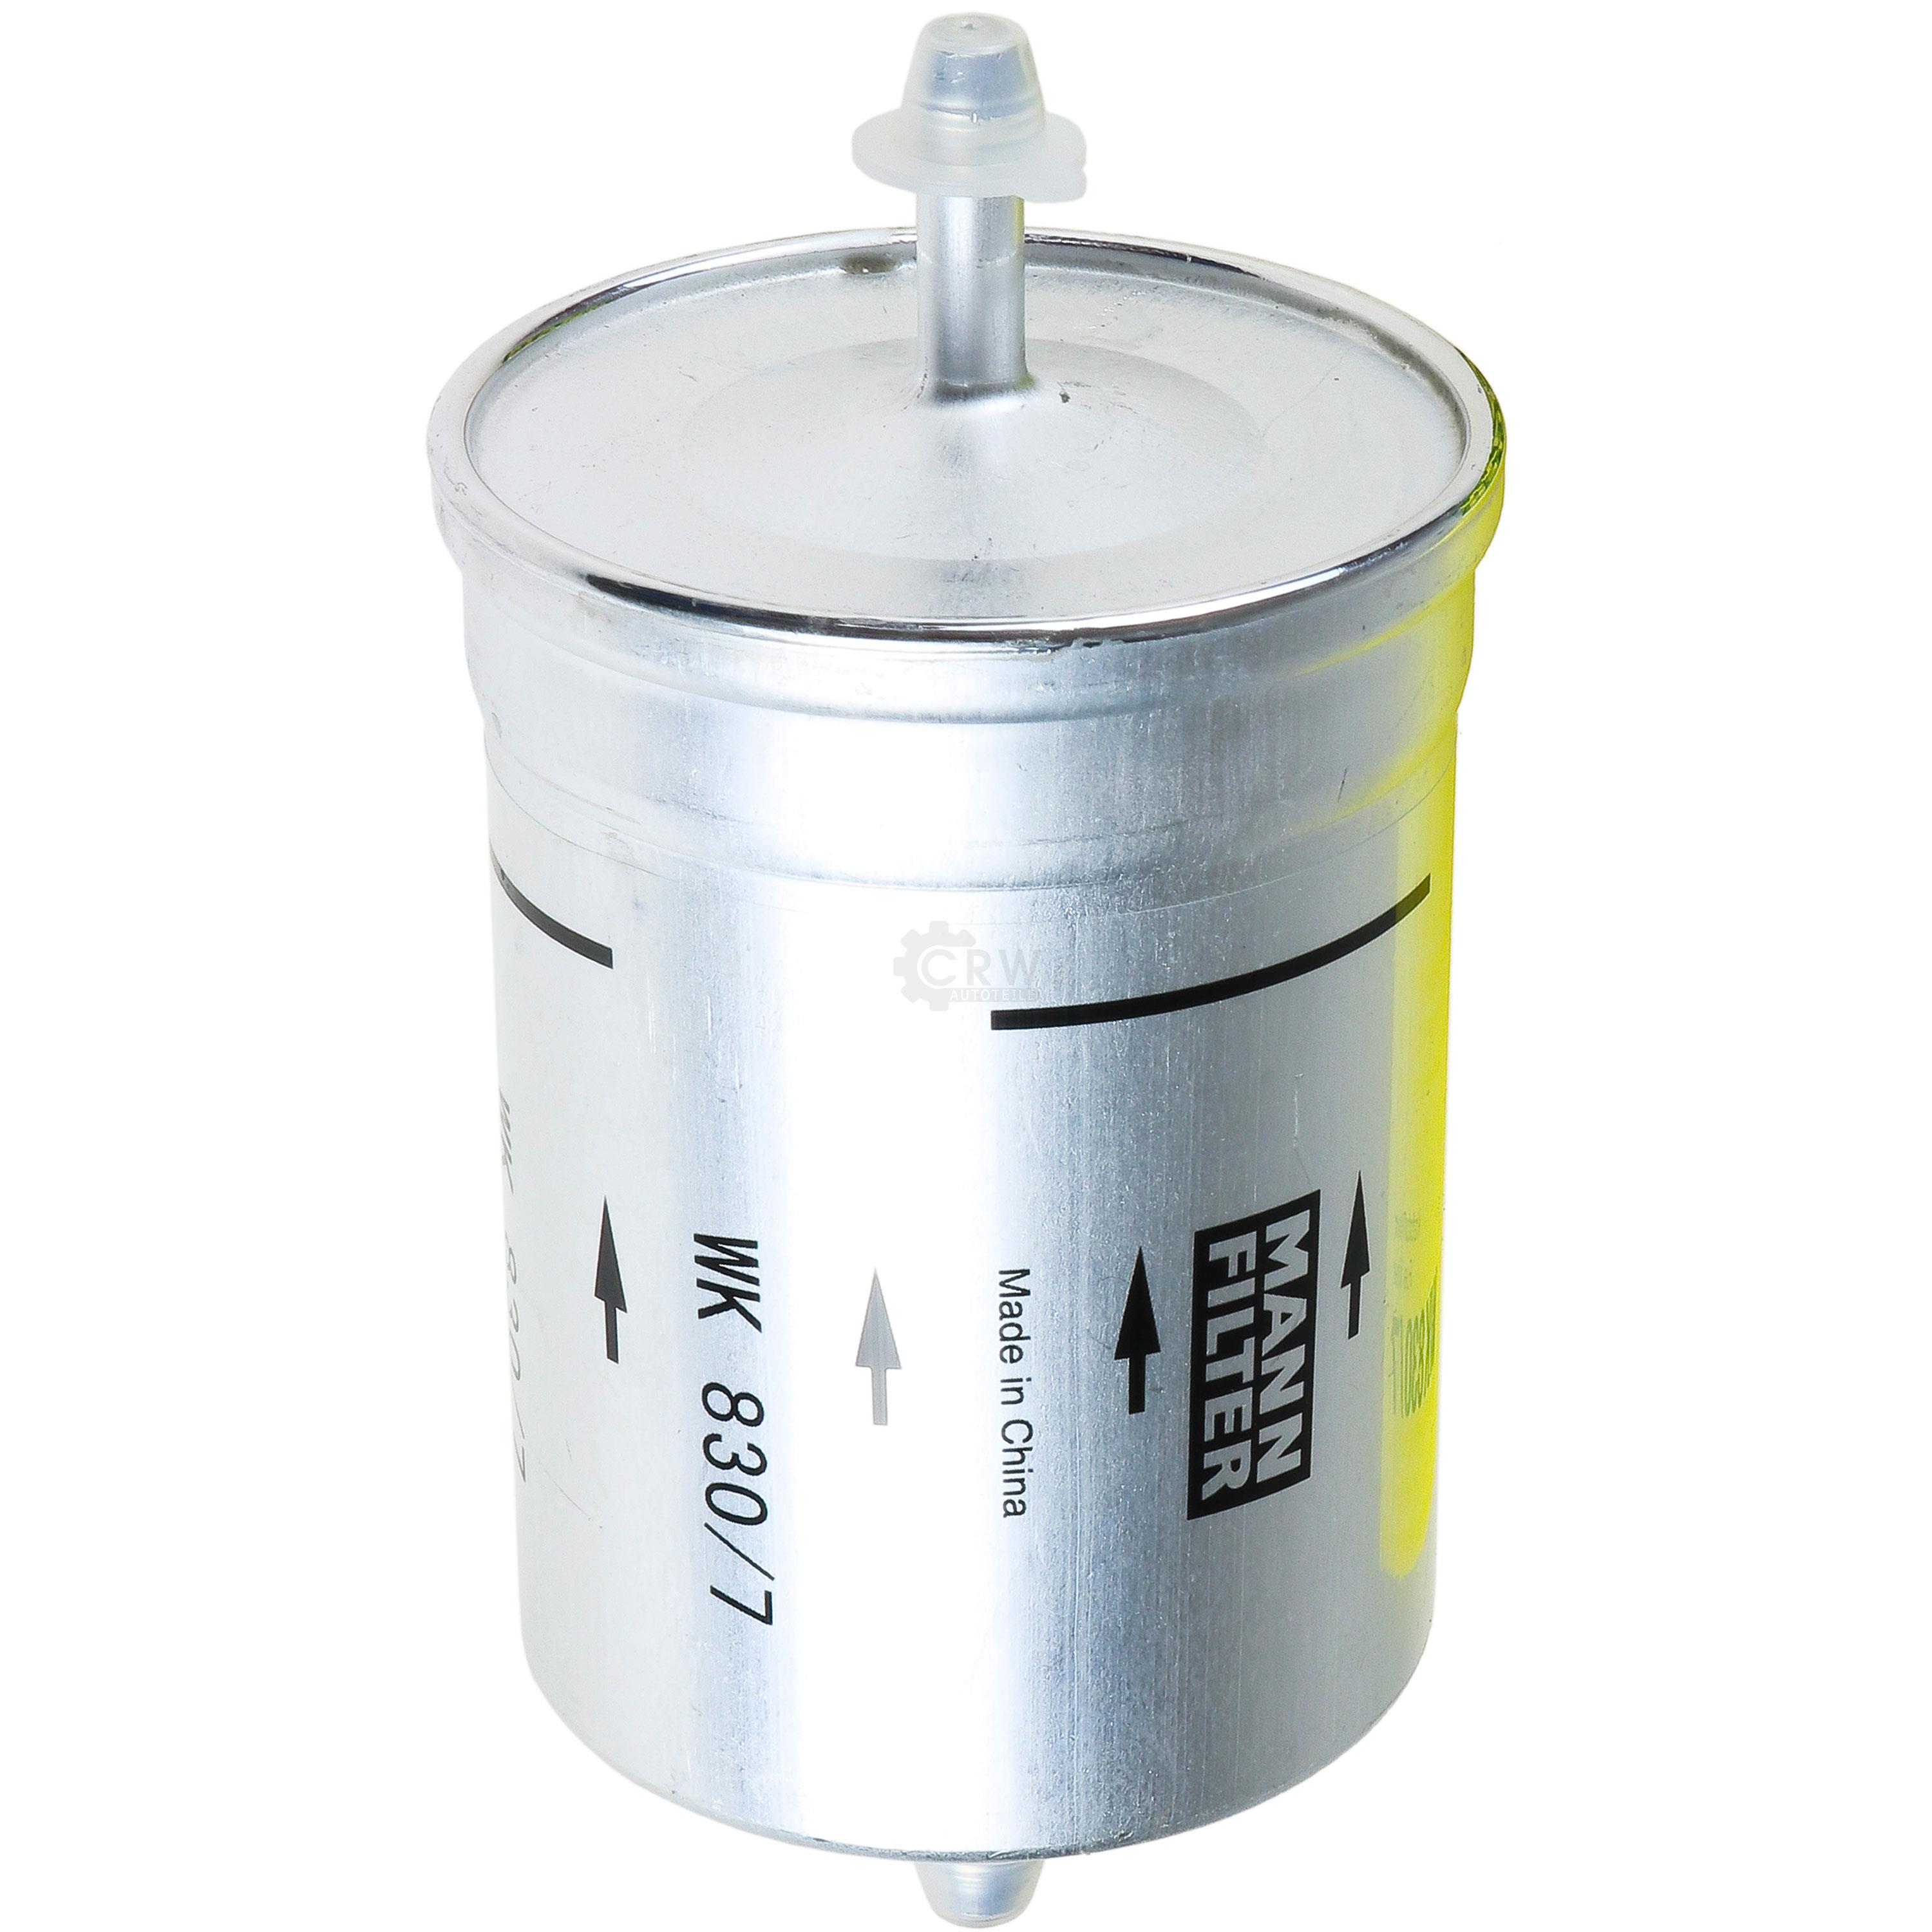 MANN-FILTER Kraftstofffilter WK 830/7 Fuel Filter